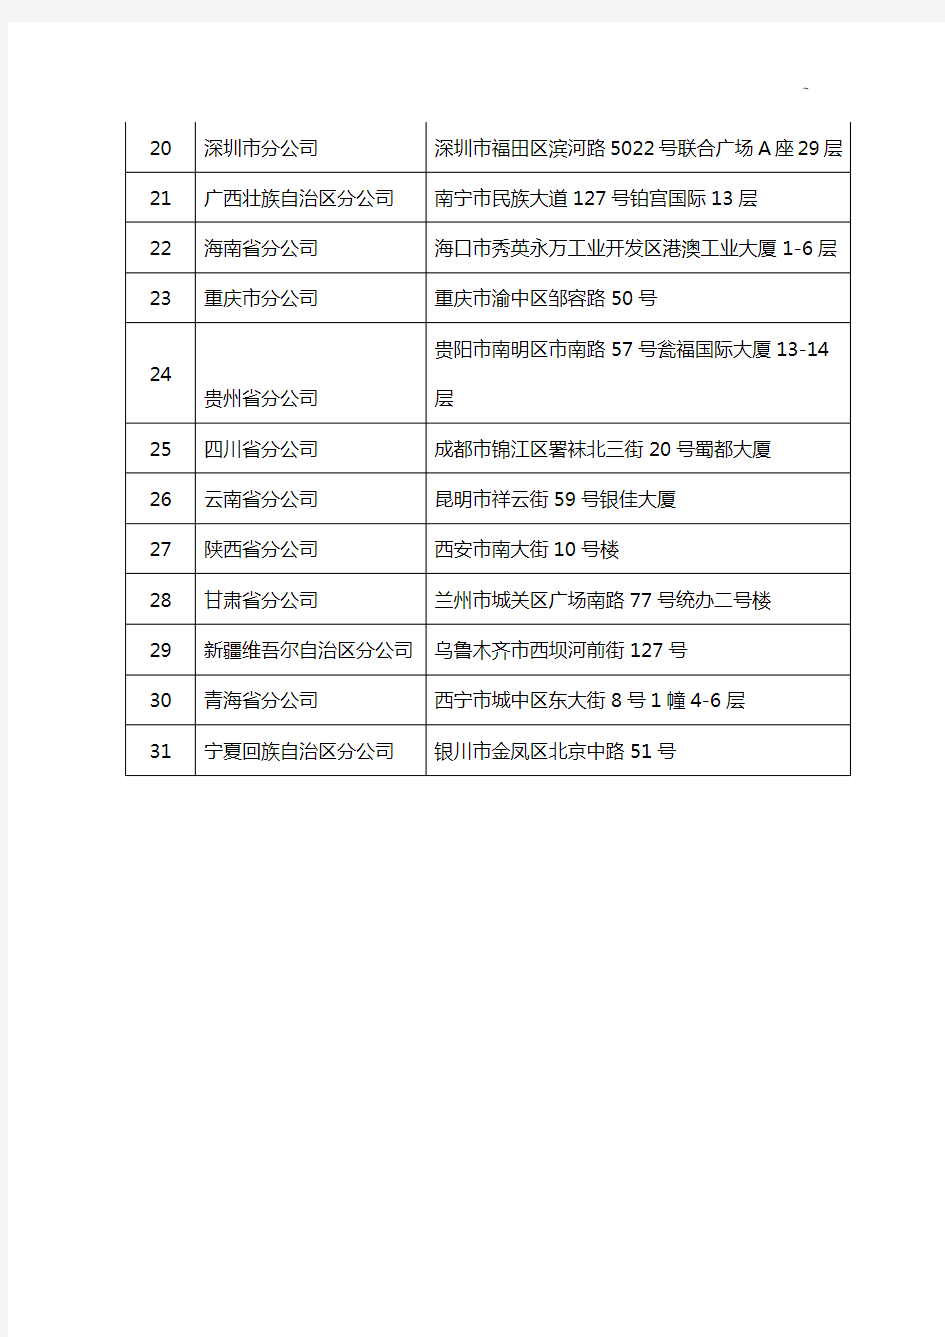 中国信达资产管理组织股份有限企业单位所属二级分支机构名单资料